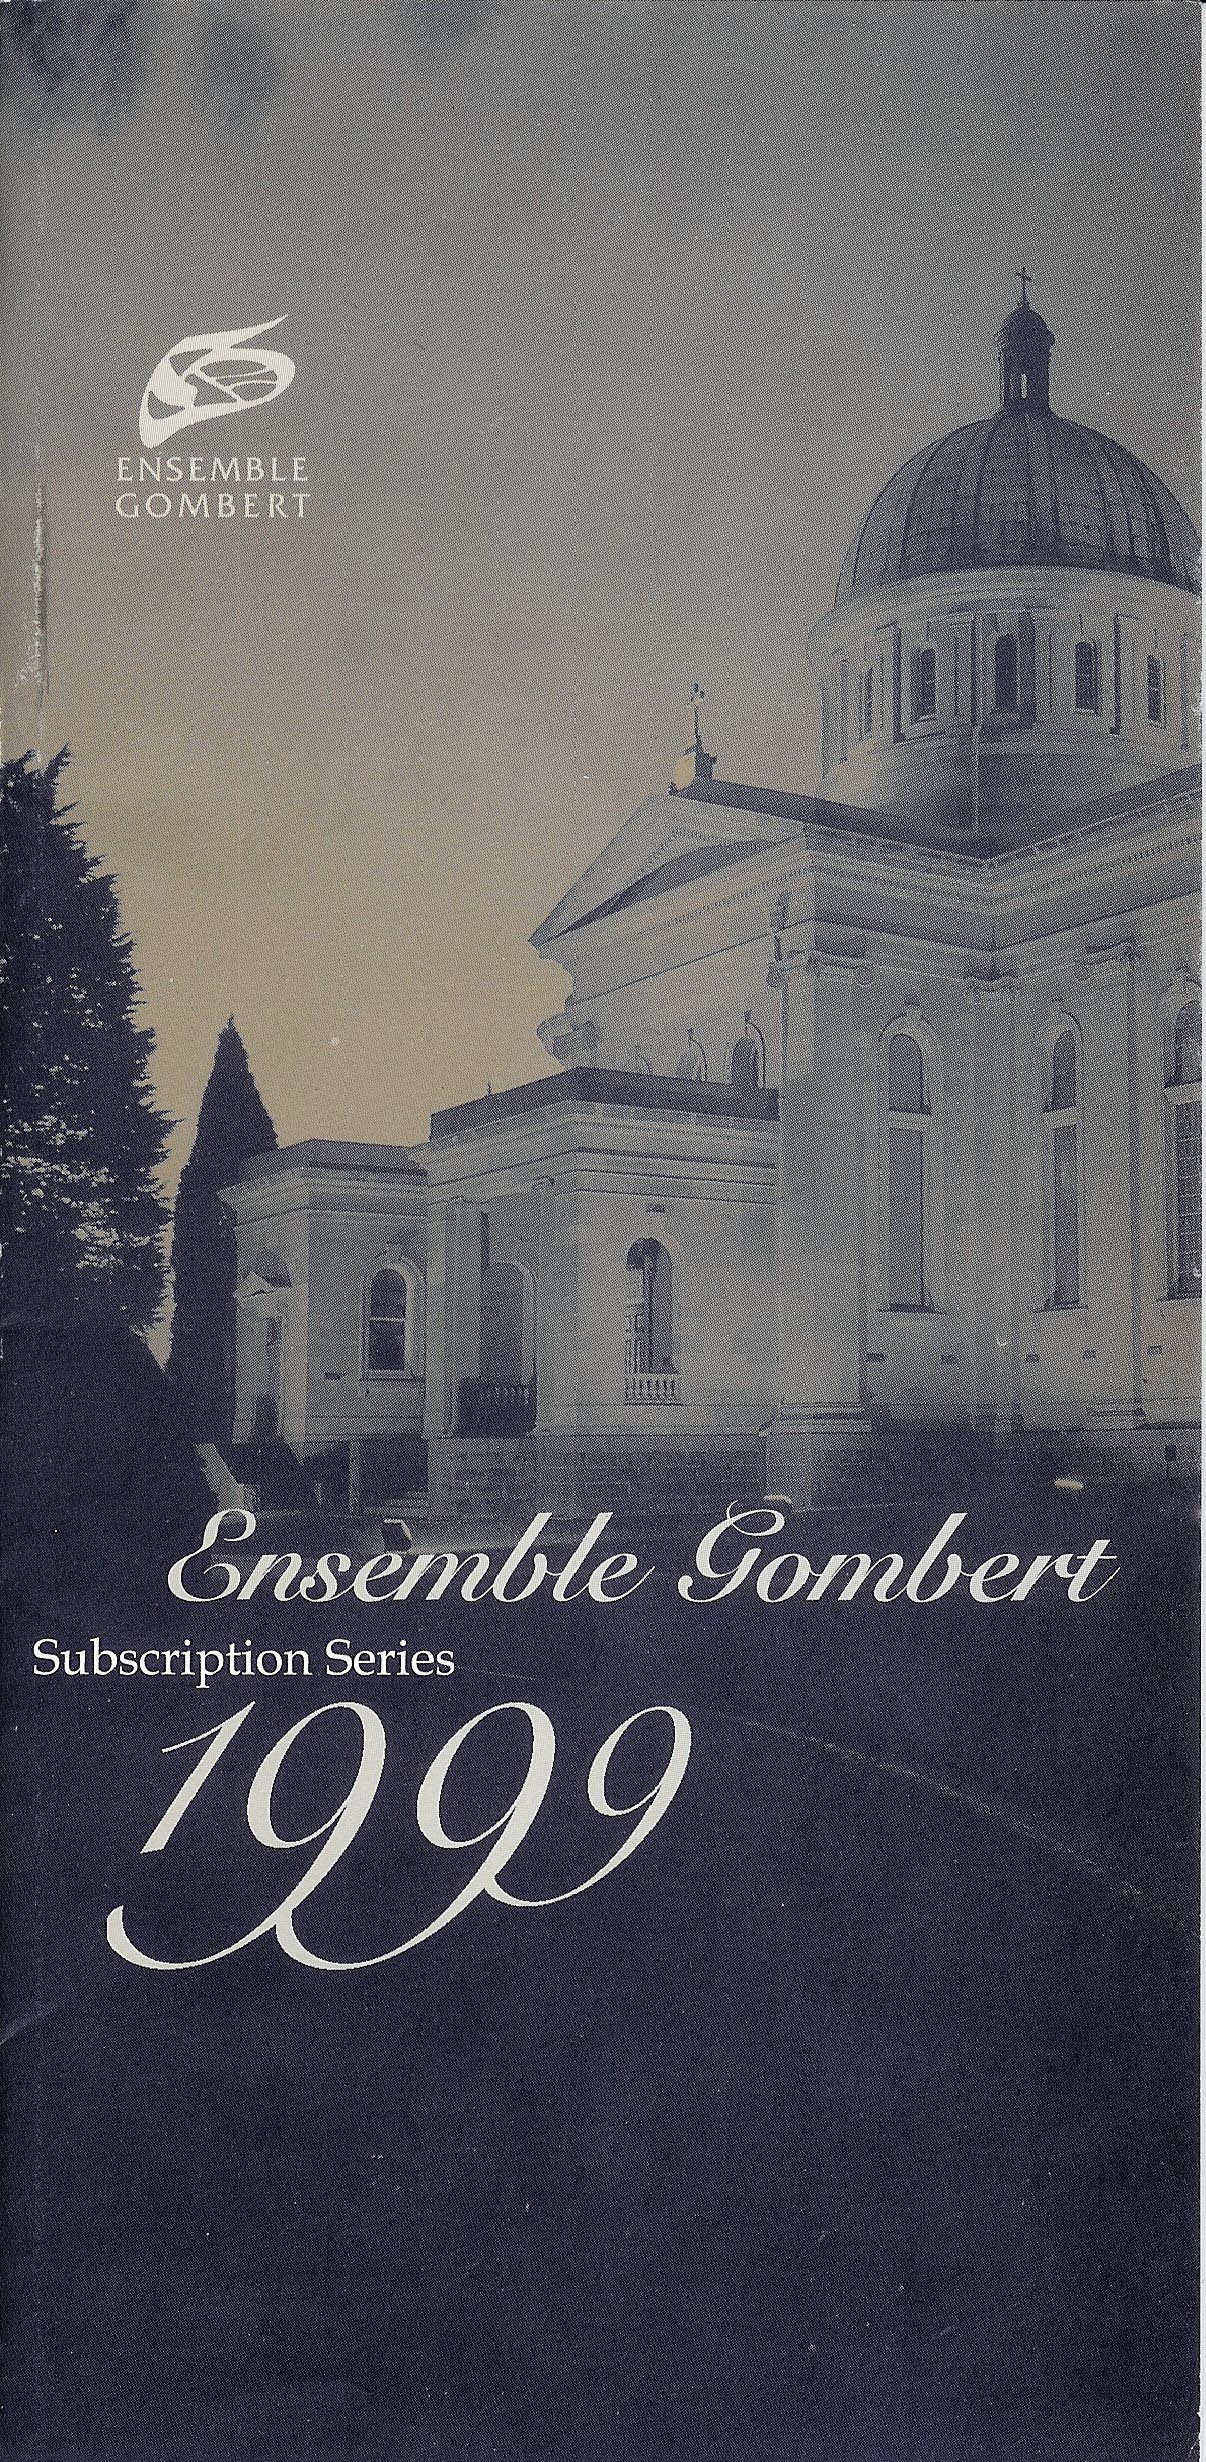 1999 Brochure